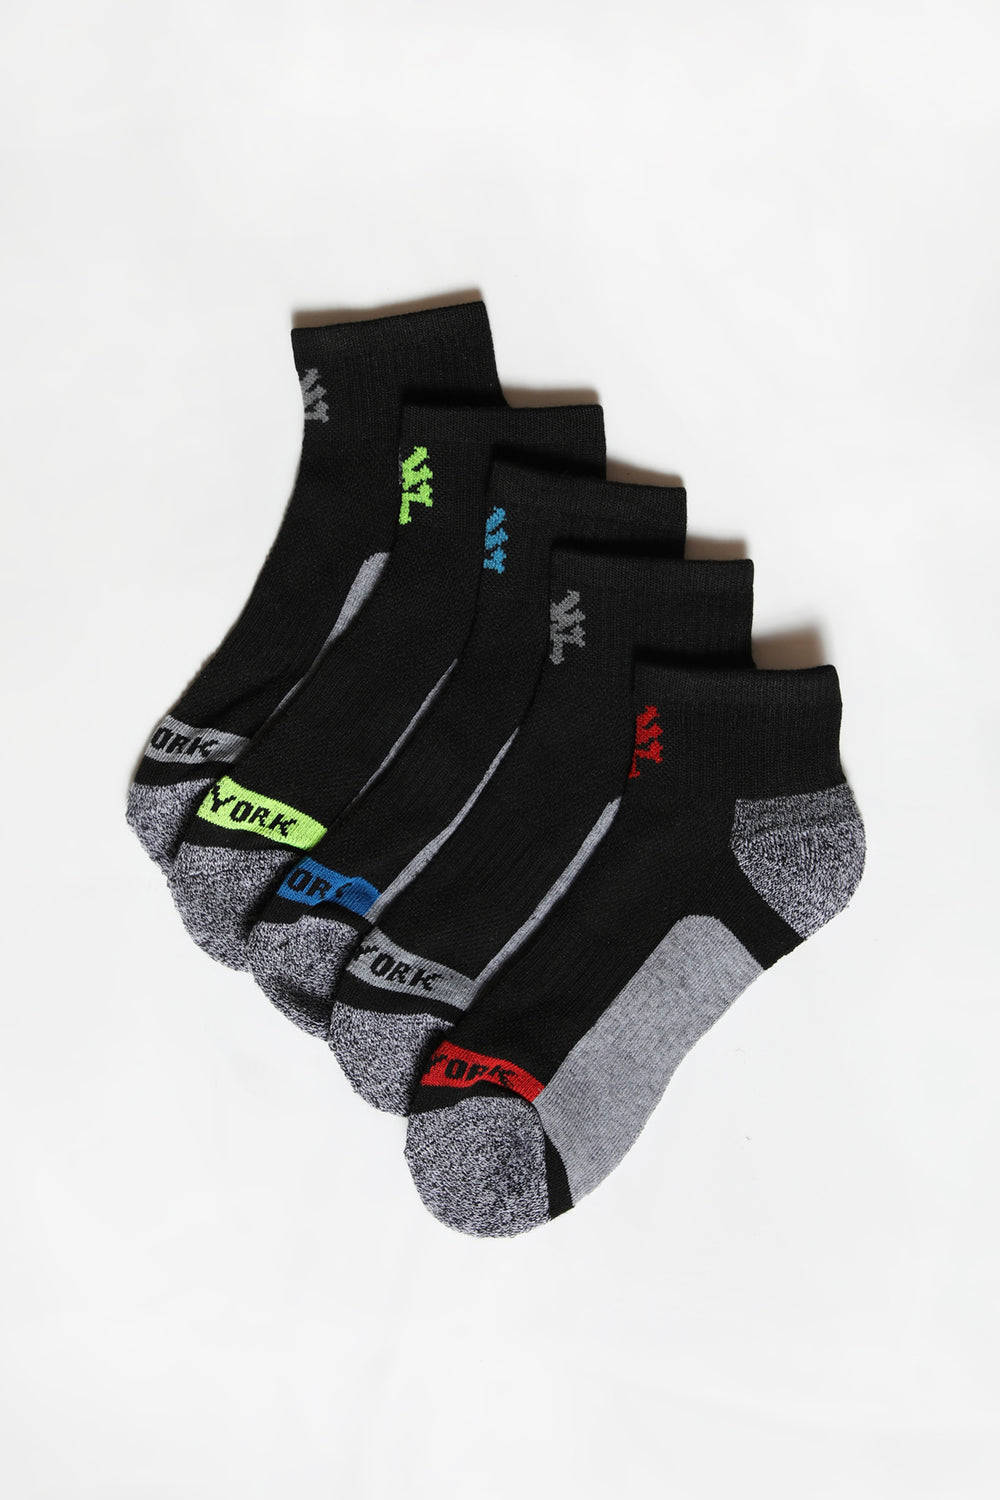 Zoo York Mens 5-Pack Athletic Ankle Socks Black